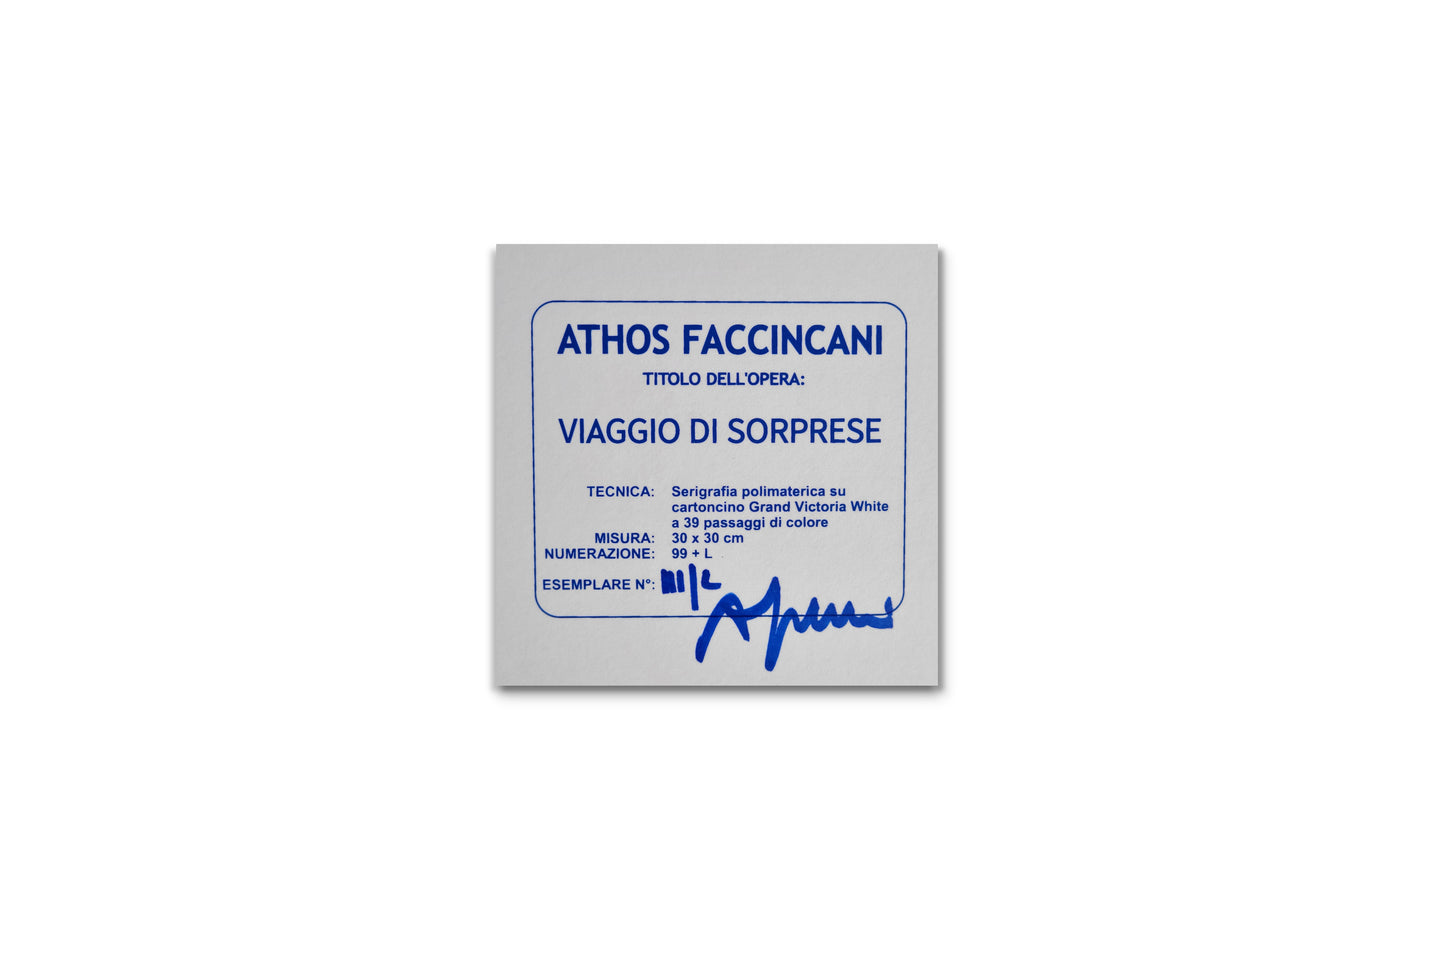 Faccincani Grafics - Serigrafie e Grafiche - Athos Faccincani - Venezia